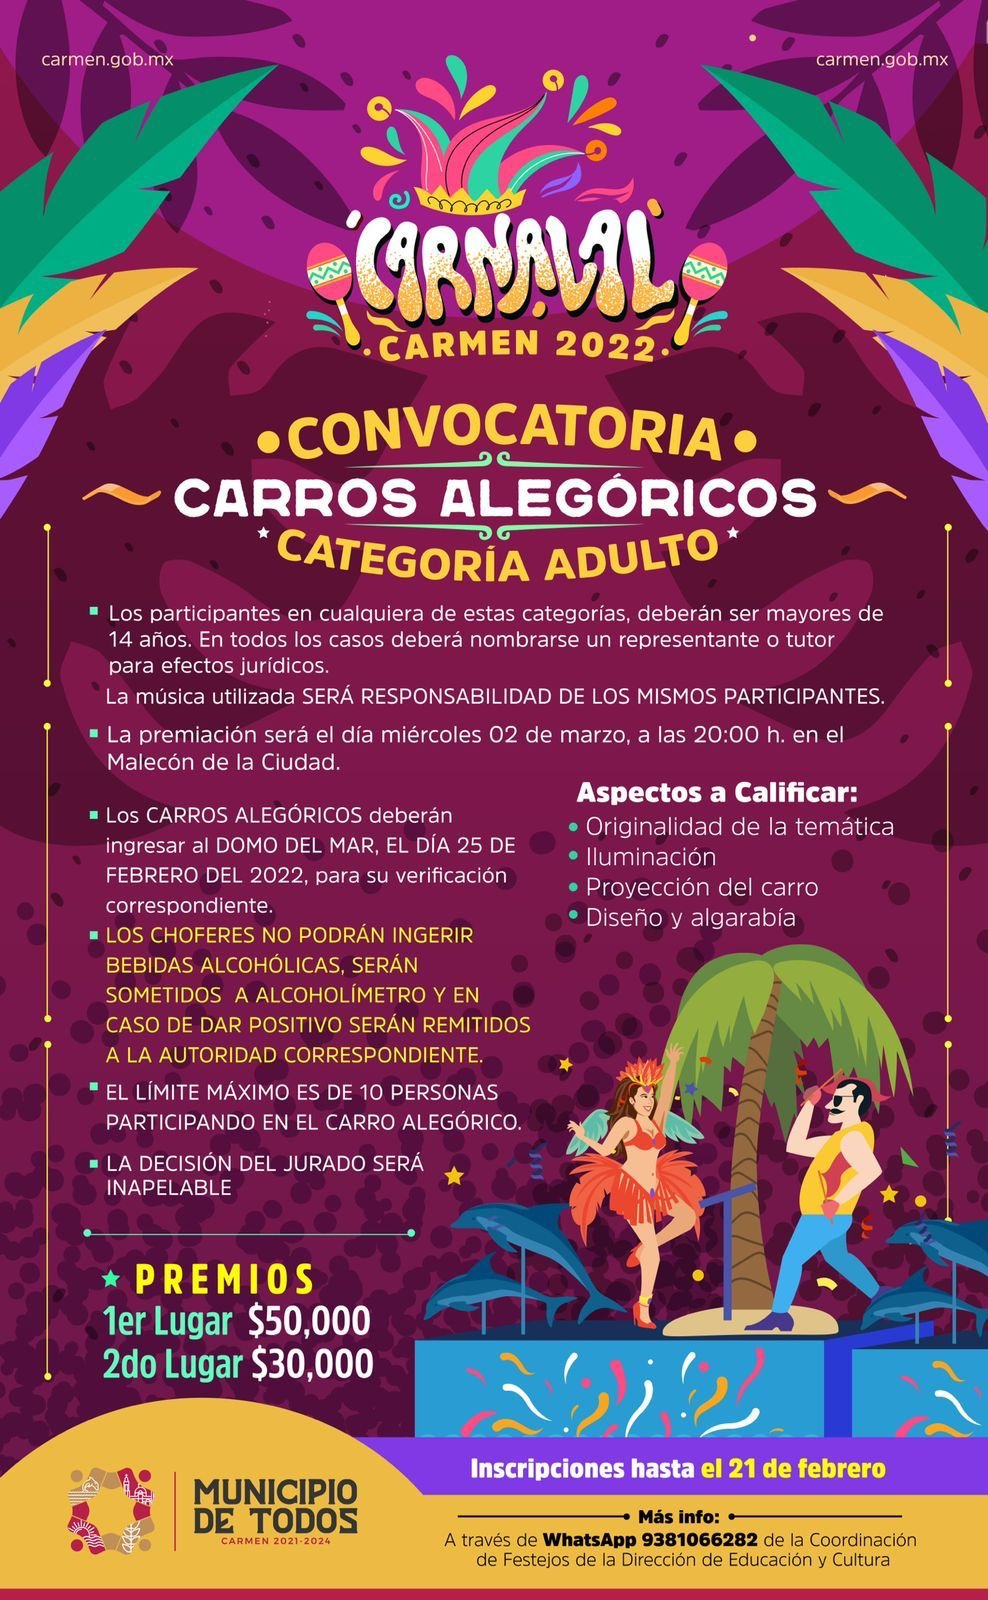 - PARTICIPA EN EL CARNAVAL CARMEN EN SU EDICIÓN 2022 - h-ayuntamiento-del-carmen, carnaval-carmen-2022